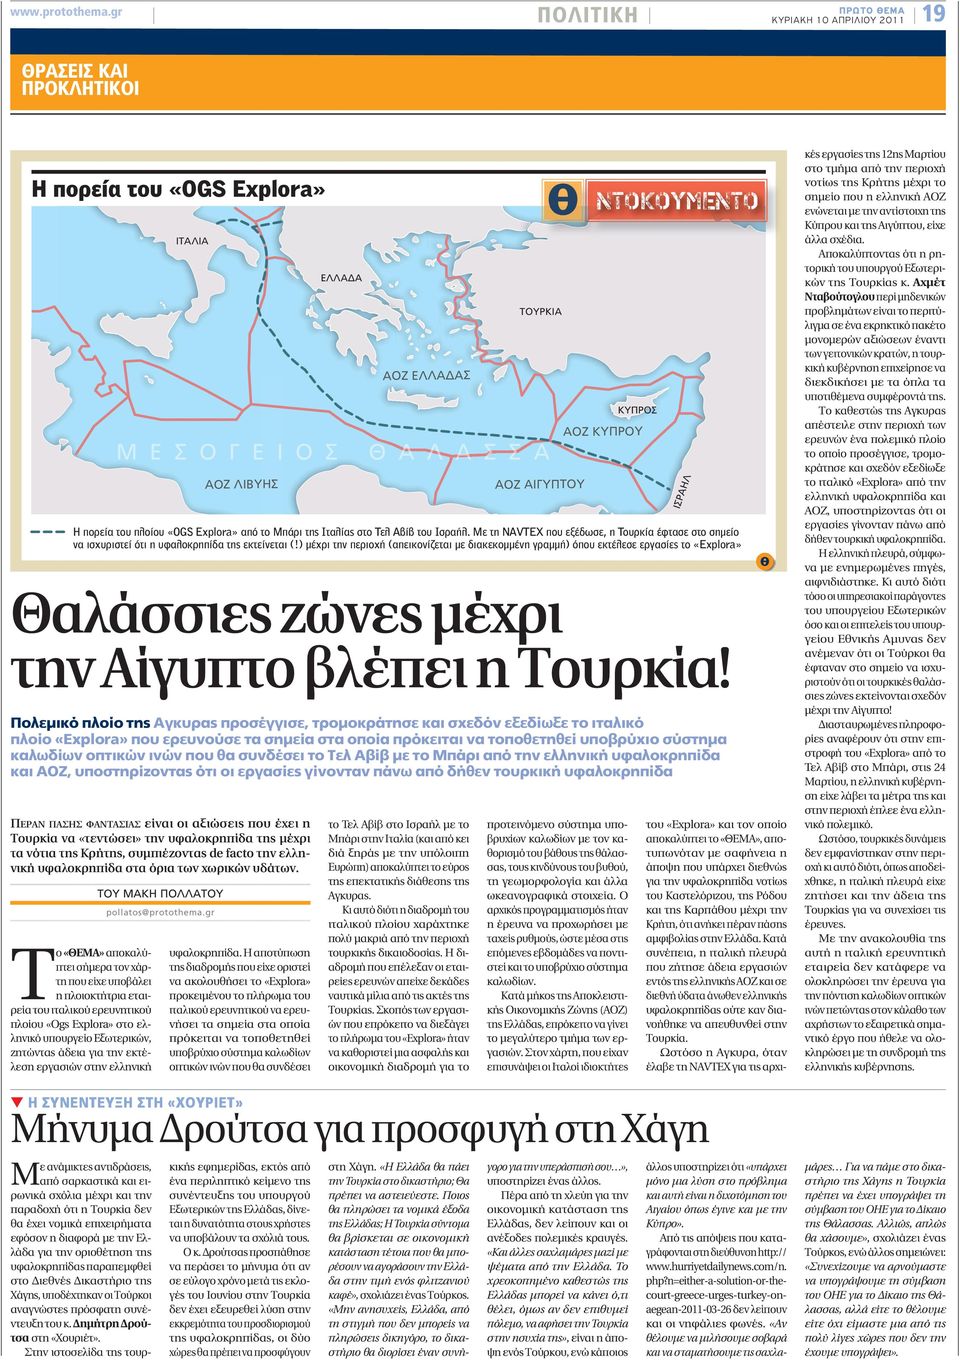 ερευνητικού πλοίου «Ogs Explora» στο ελληνικό υπουργείο Εξωτερικών, ζητώντας άδεια για την εκτέλεση εργασιών στην ελληνική ΙΤΑΛΙΑ Μ Ε Σ Ο Γ Ε Ι AOZ ΛΙΒΥΗΣ Θαλάσσιες ζώνες μέχρι την Αίγυπτο βλέπει η